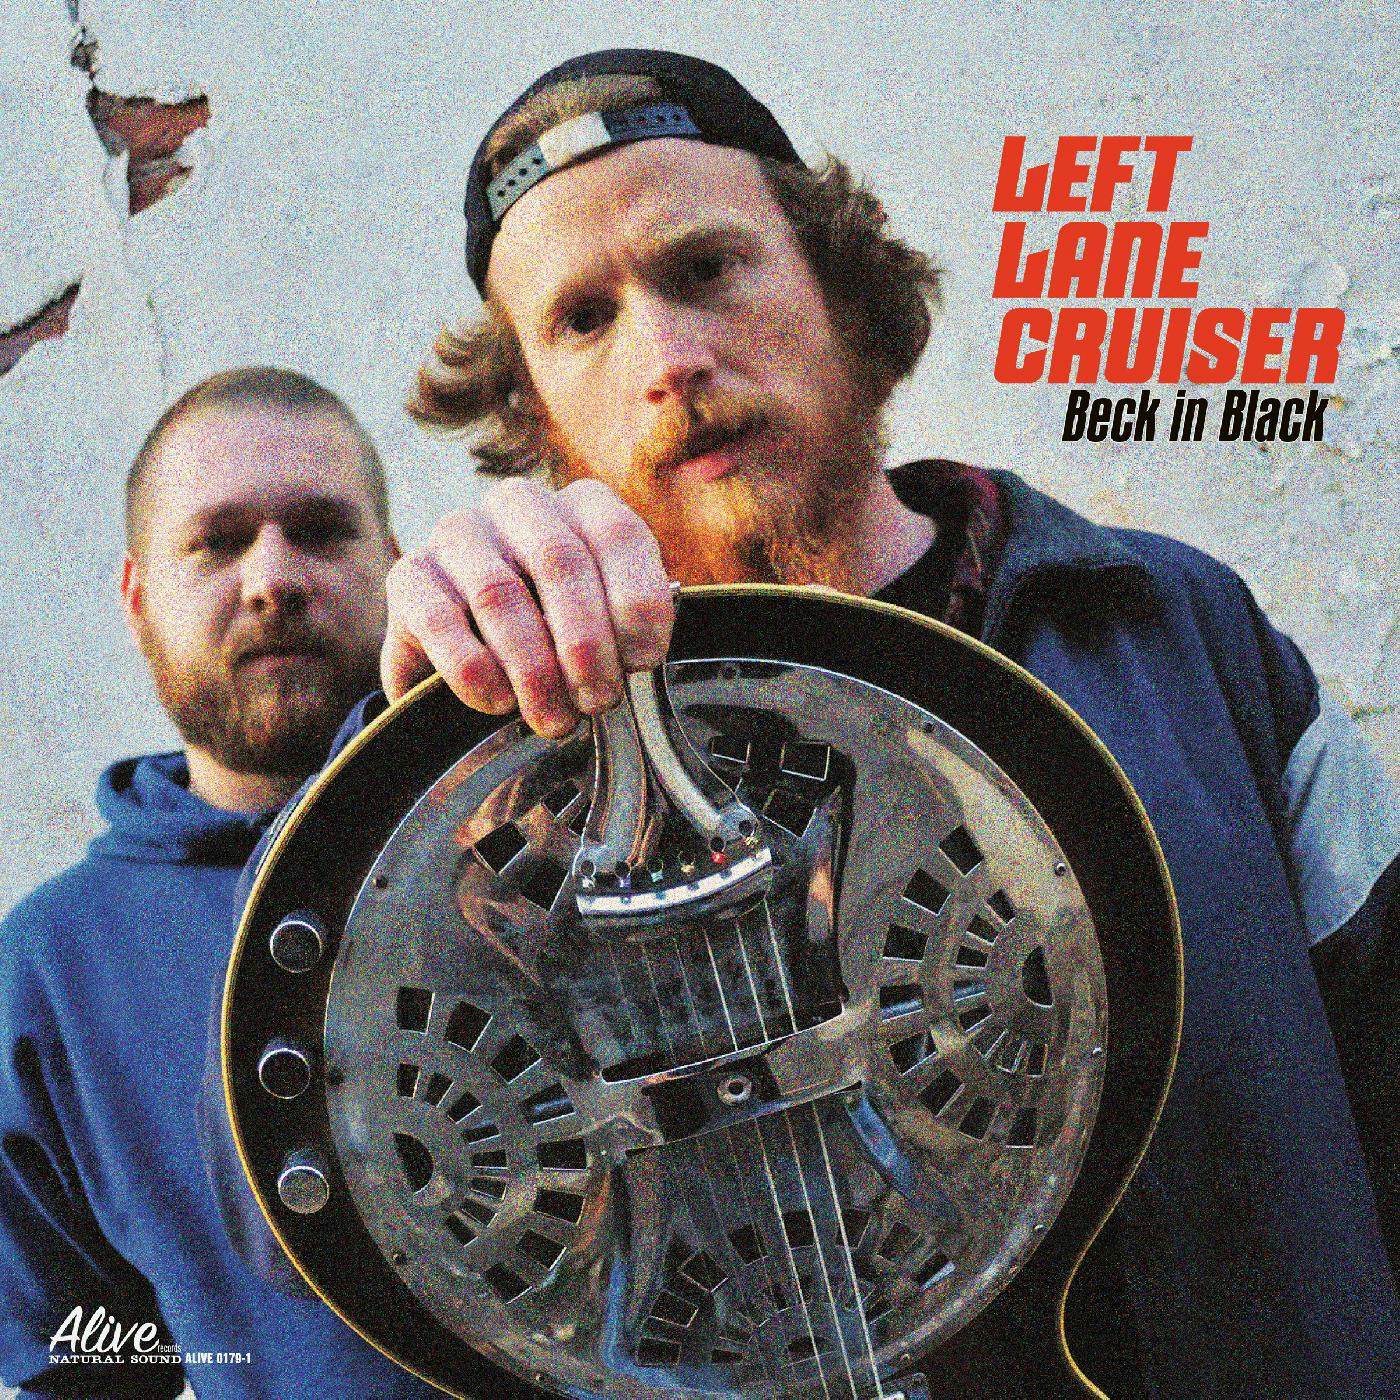 Left Lane Cruiser Beck In Black Vinyl Record